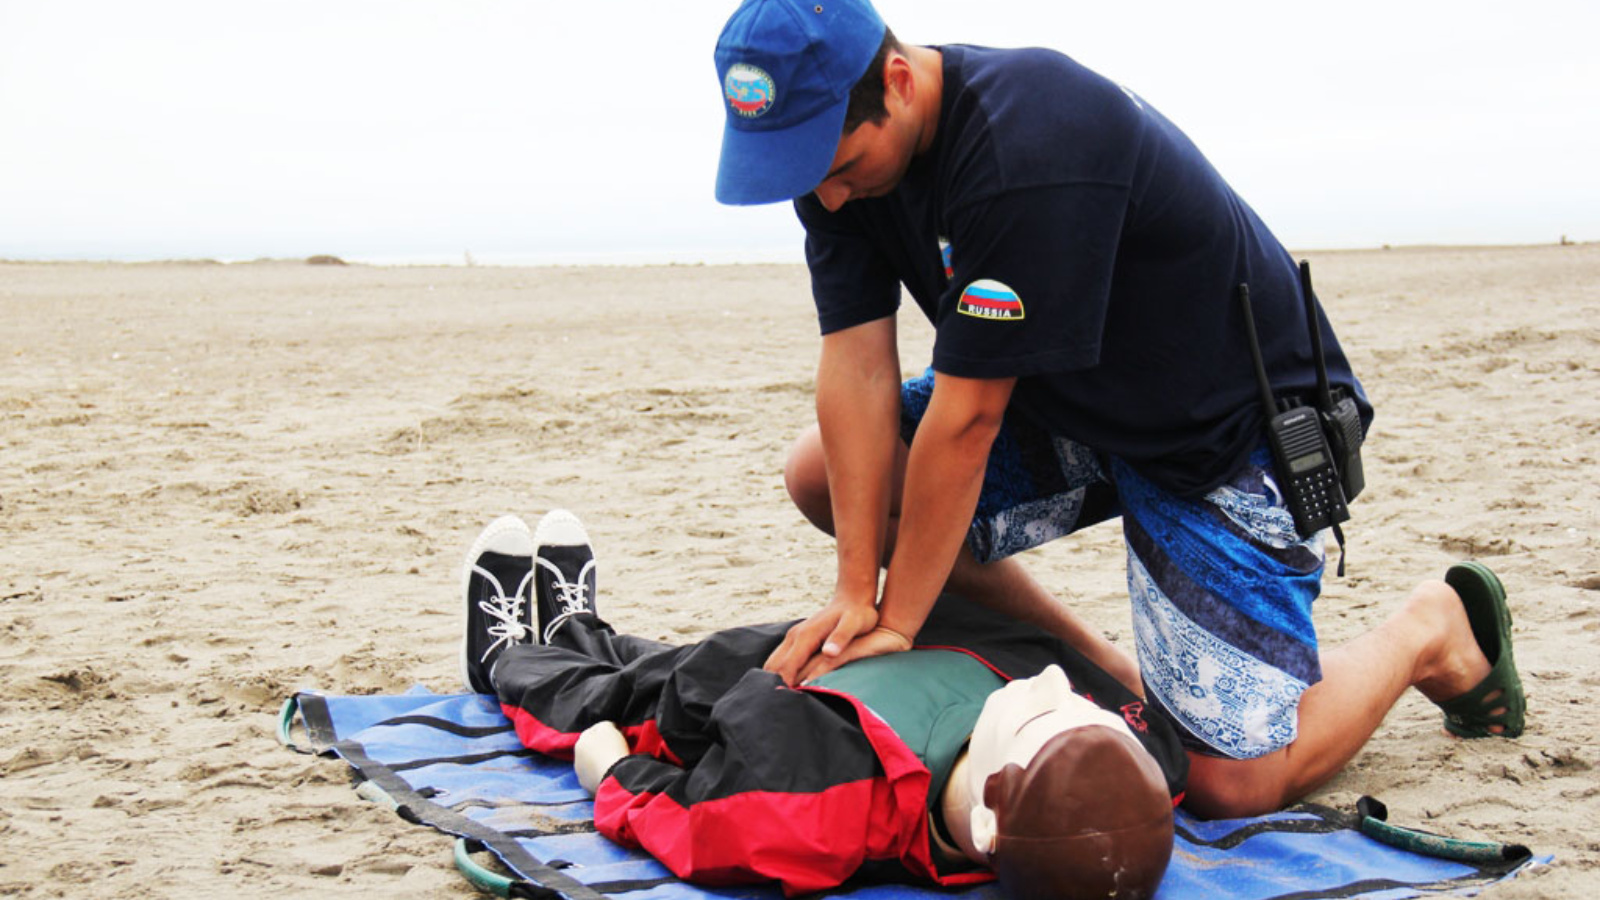 Случай спасения человека. Первая помощь утопающему на воде. Человек без сознания на берегу. Первая помощь утопающему на берегу.